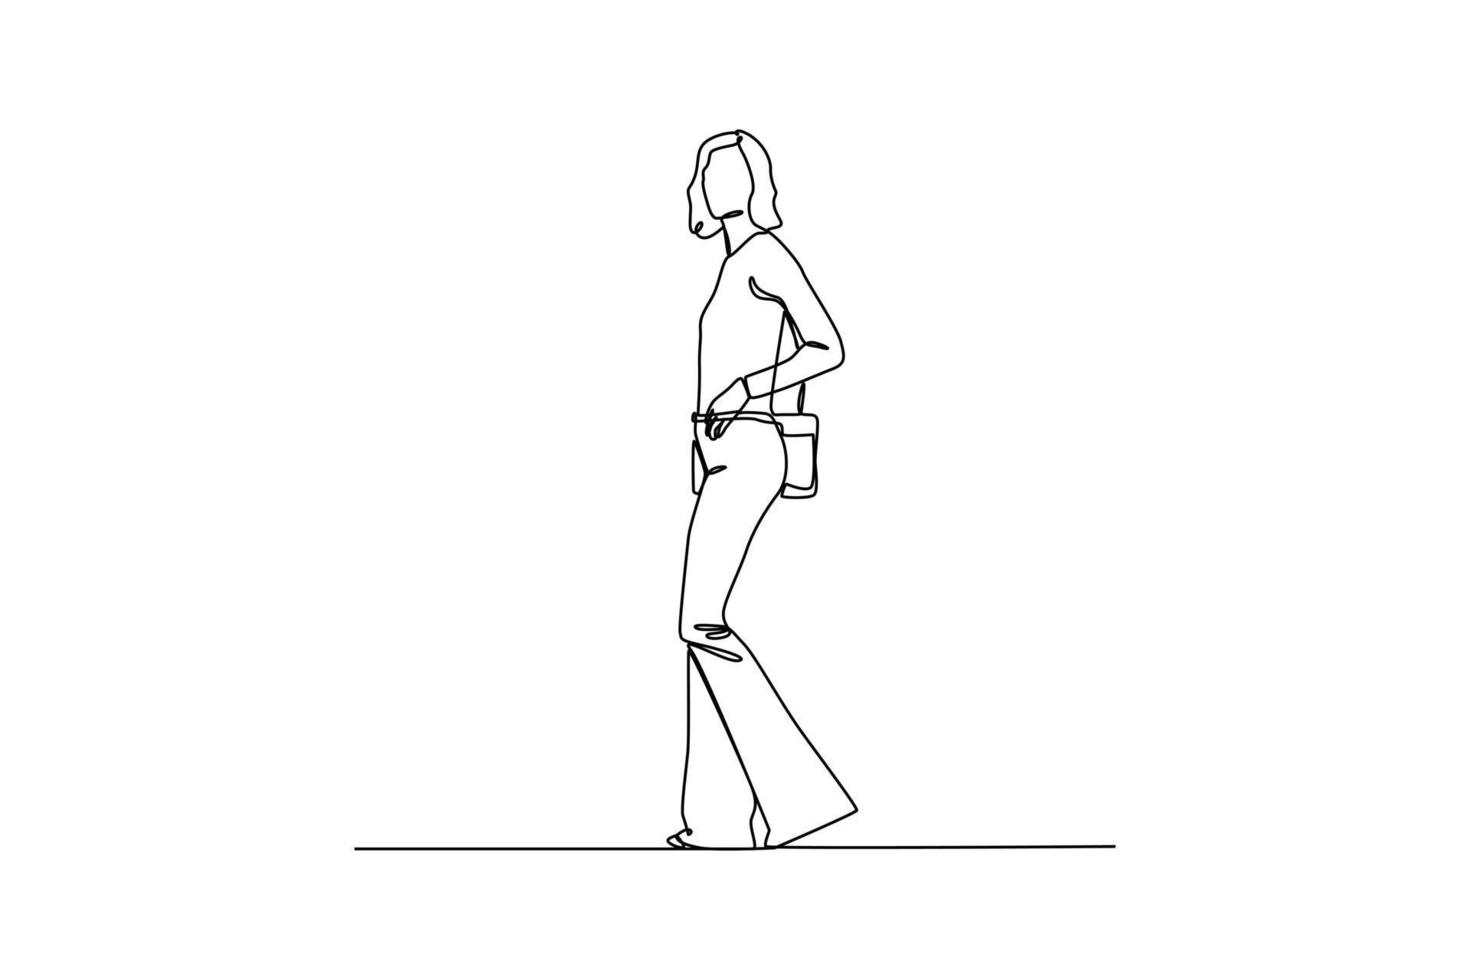 continuo uno linea disegno Uomini o Da donna capi di abbigliamento stili. Anni '70 stile concetto. singolo linea disegnare design vettore grafico illustrazione.